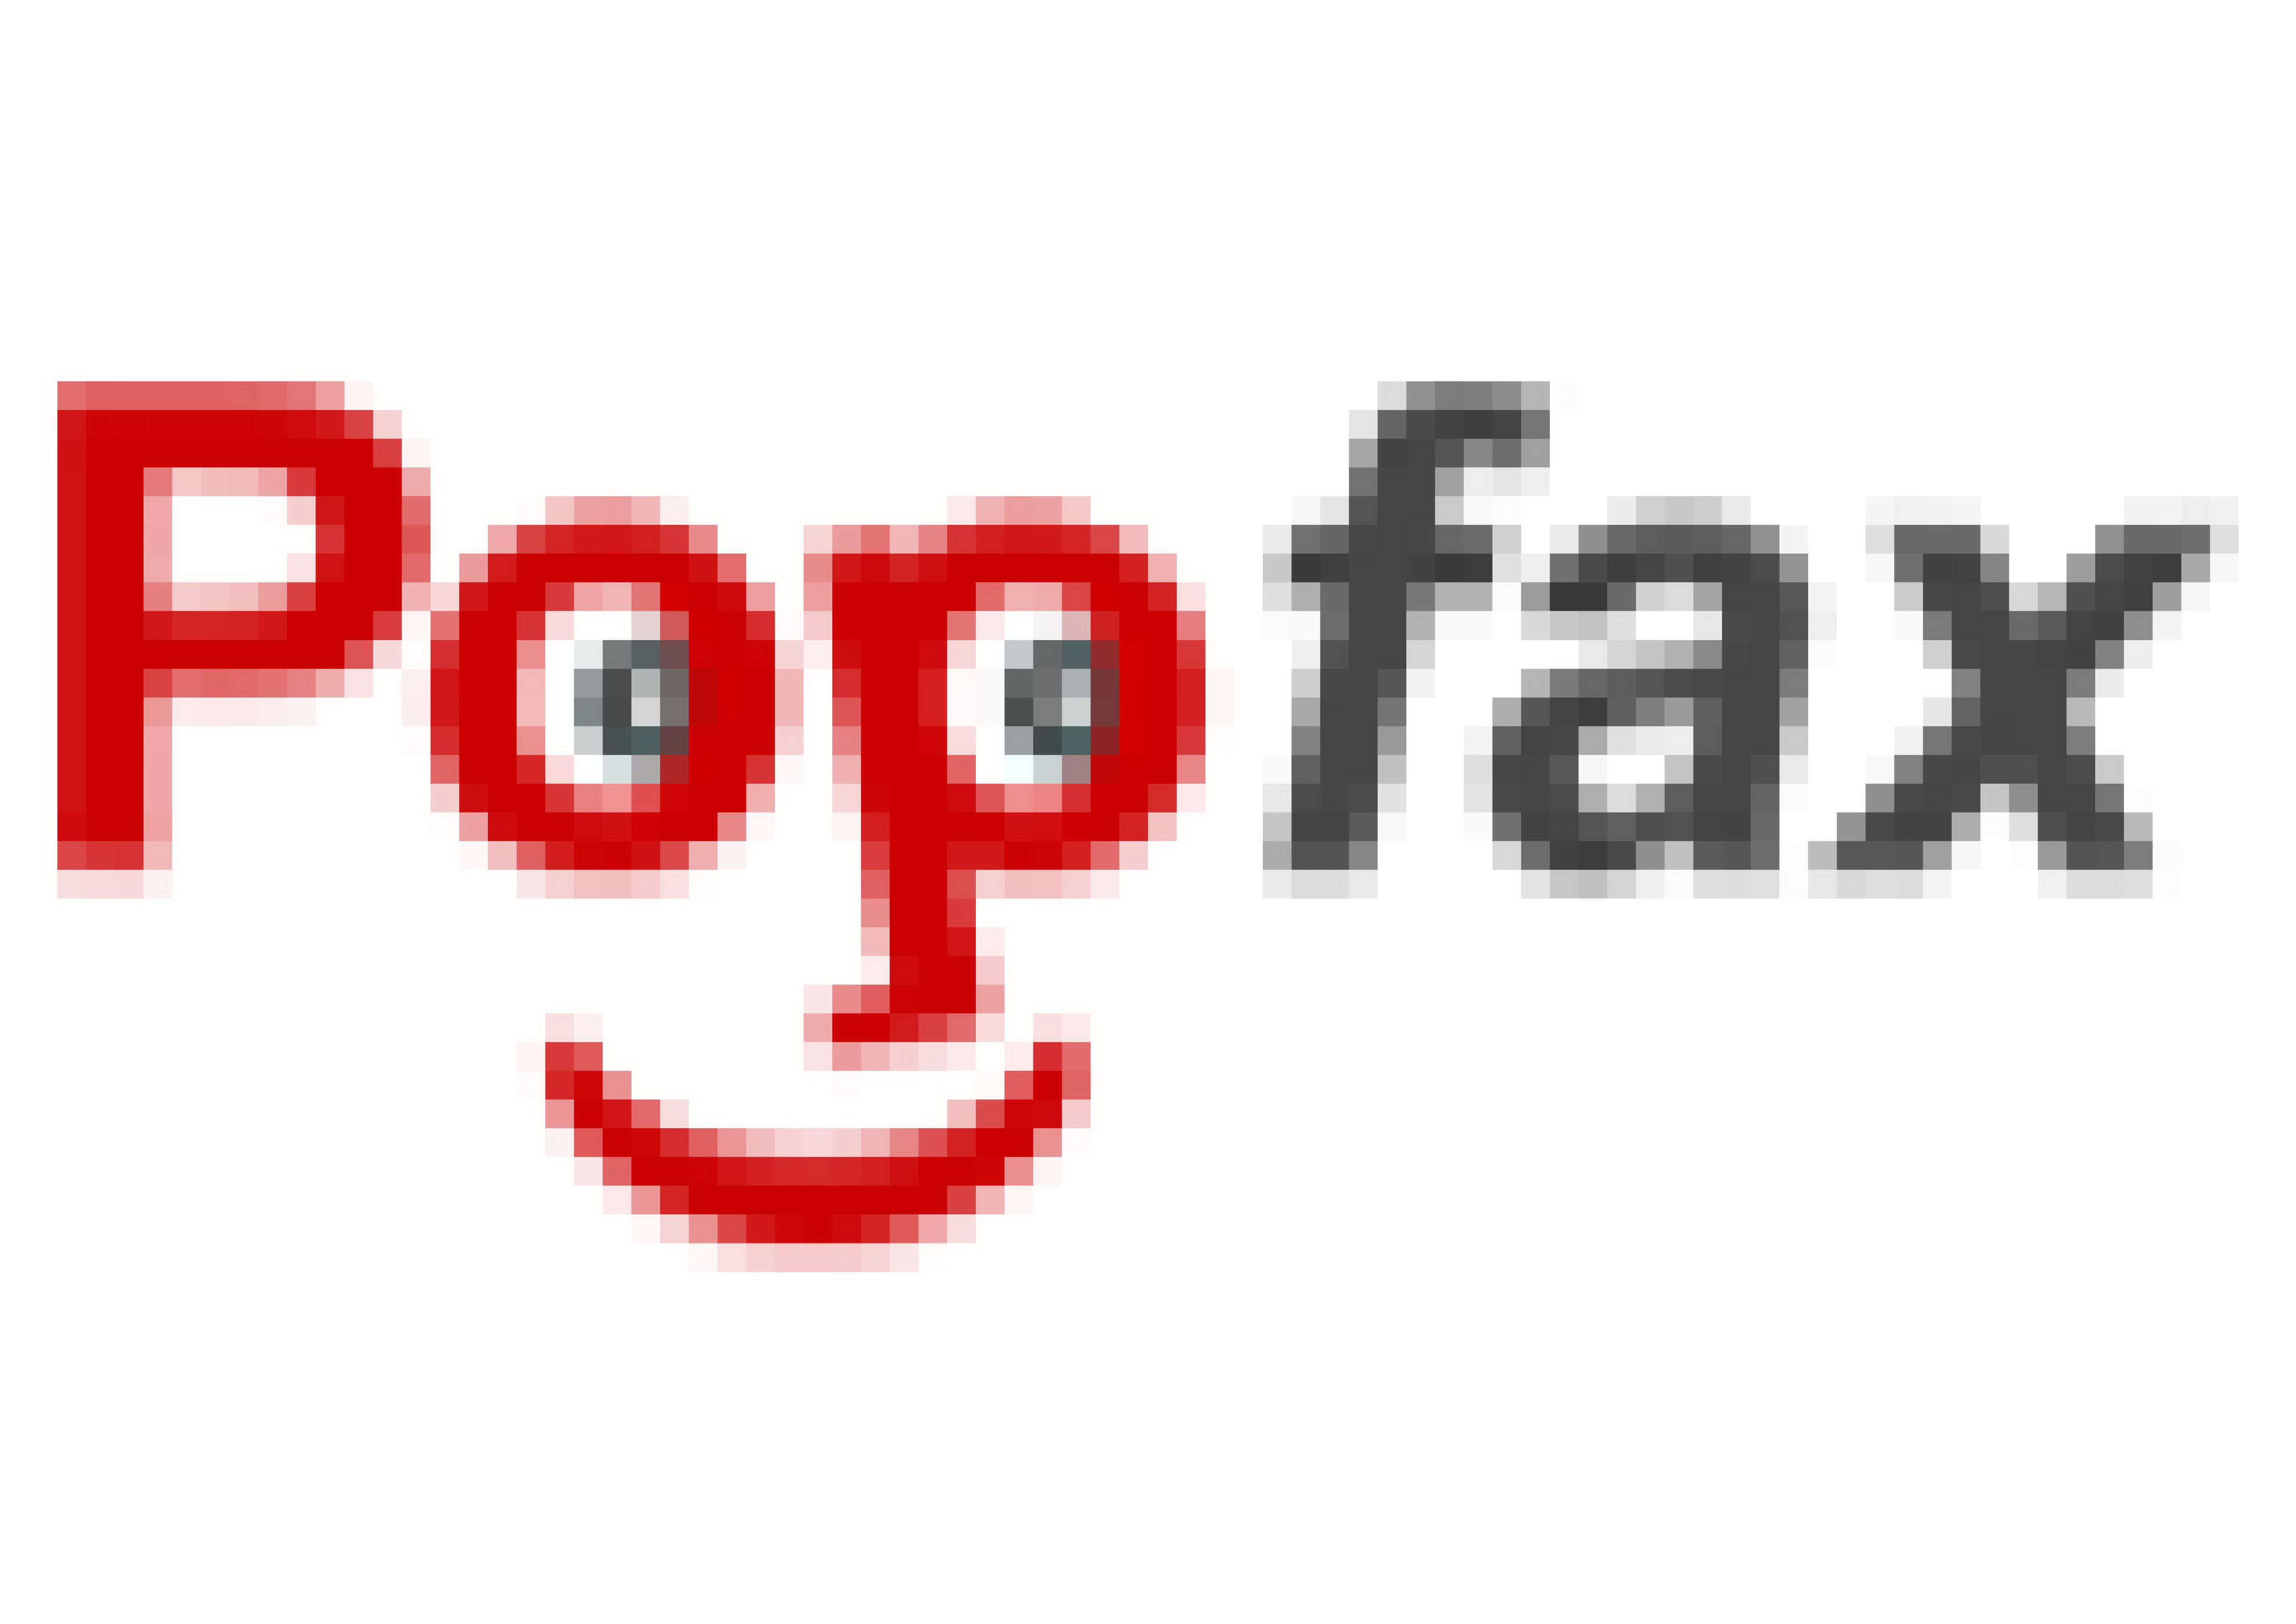 POPFAX